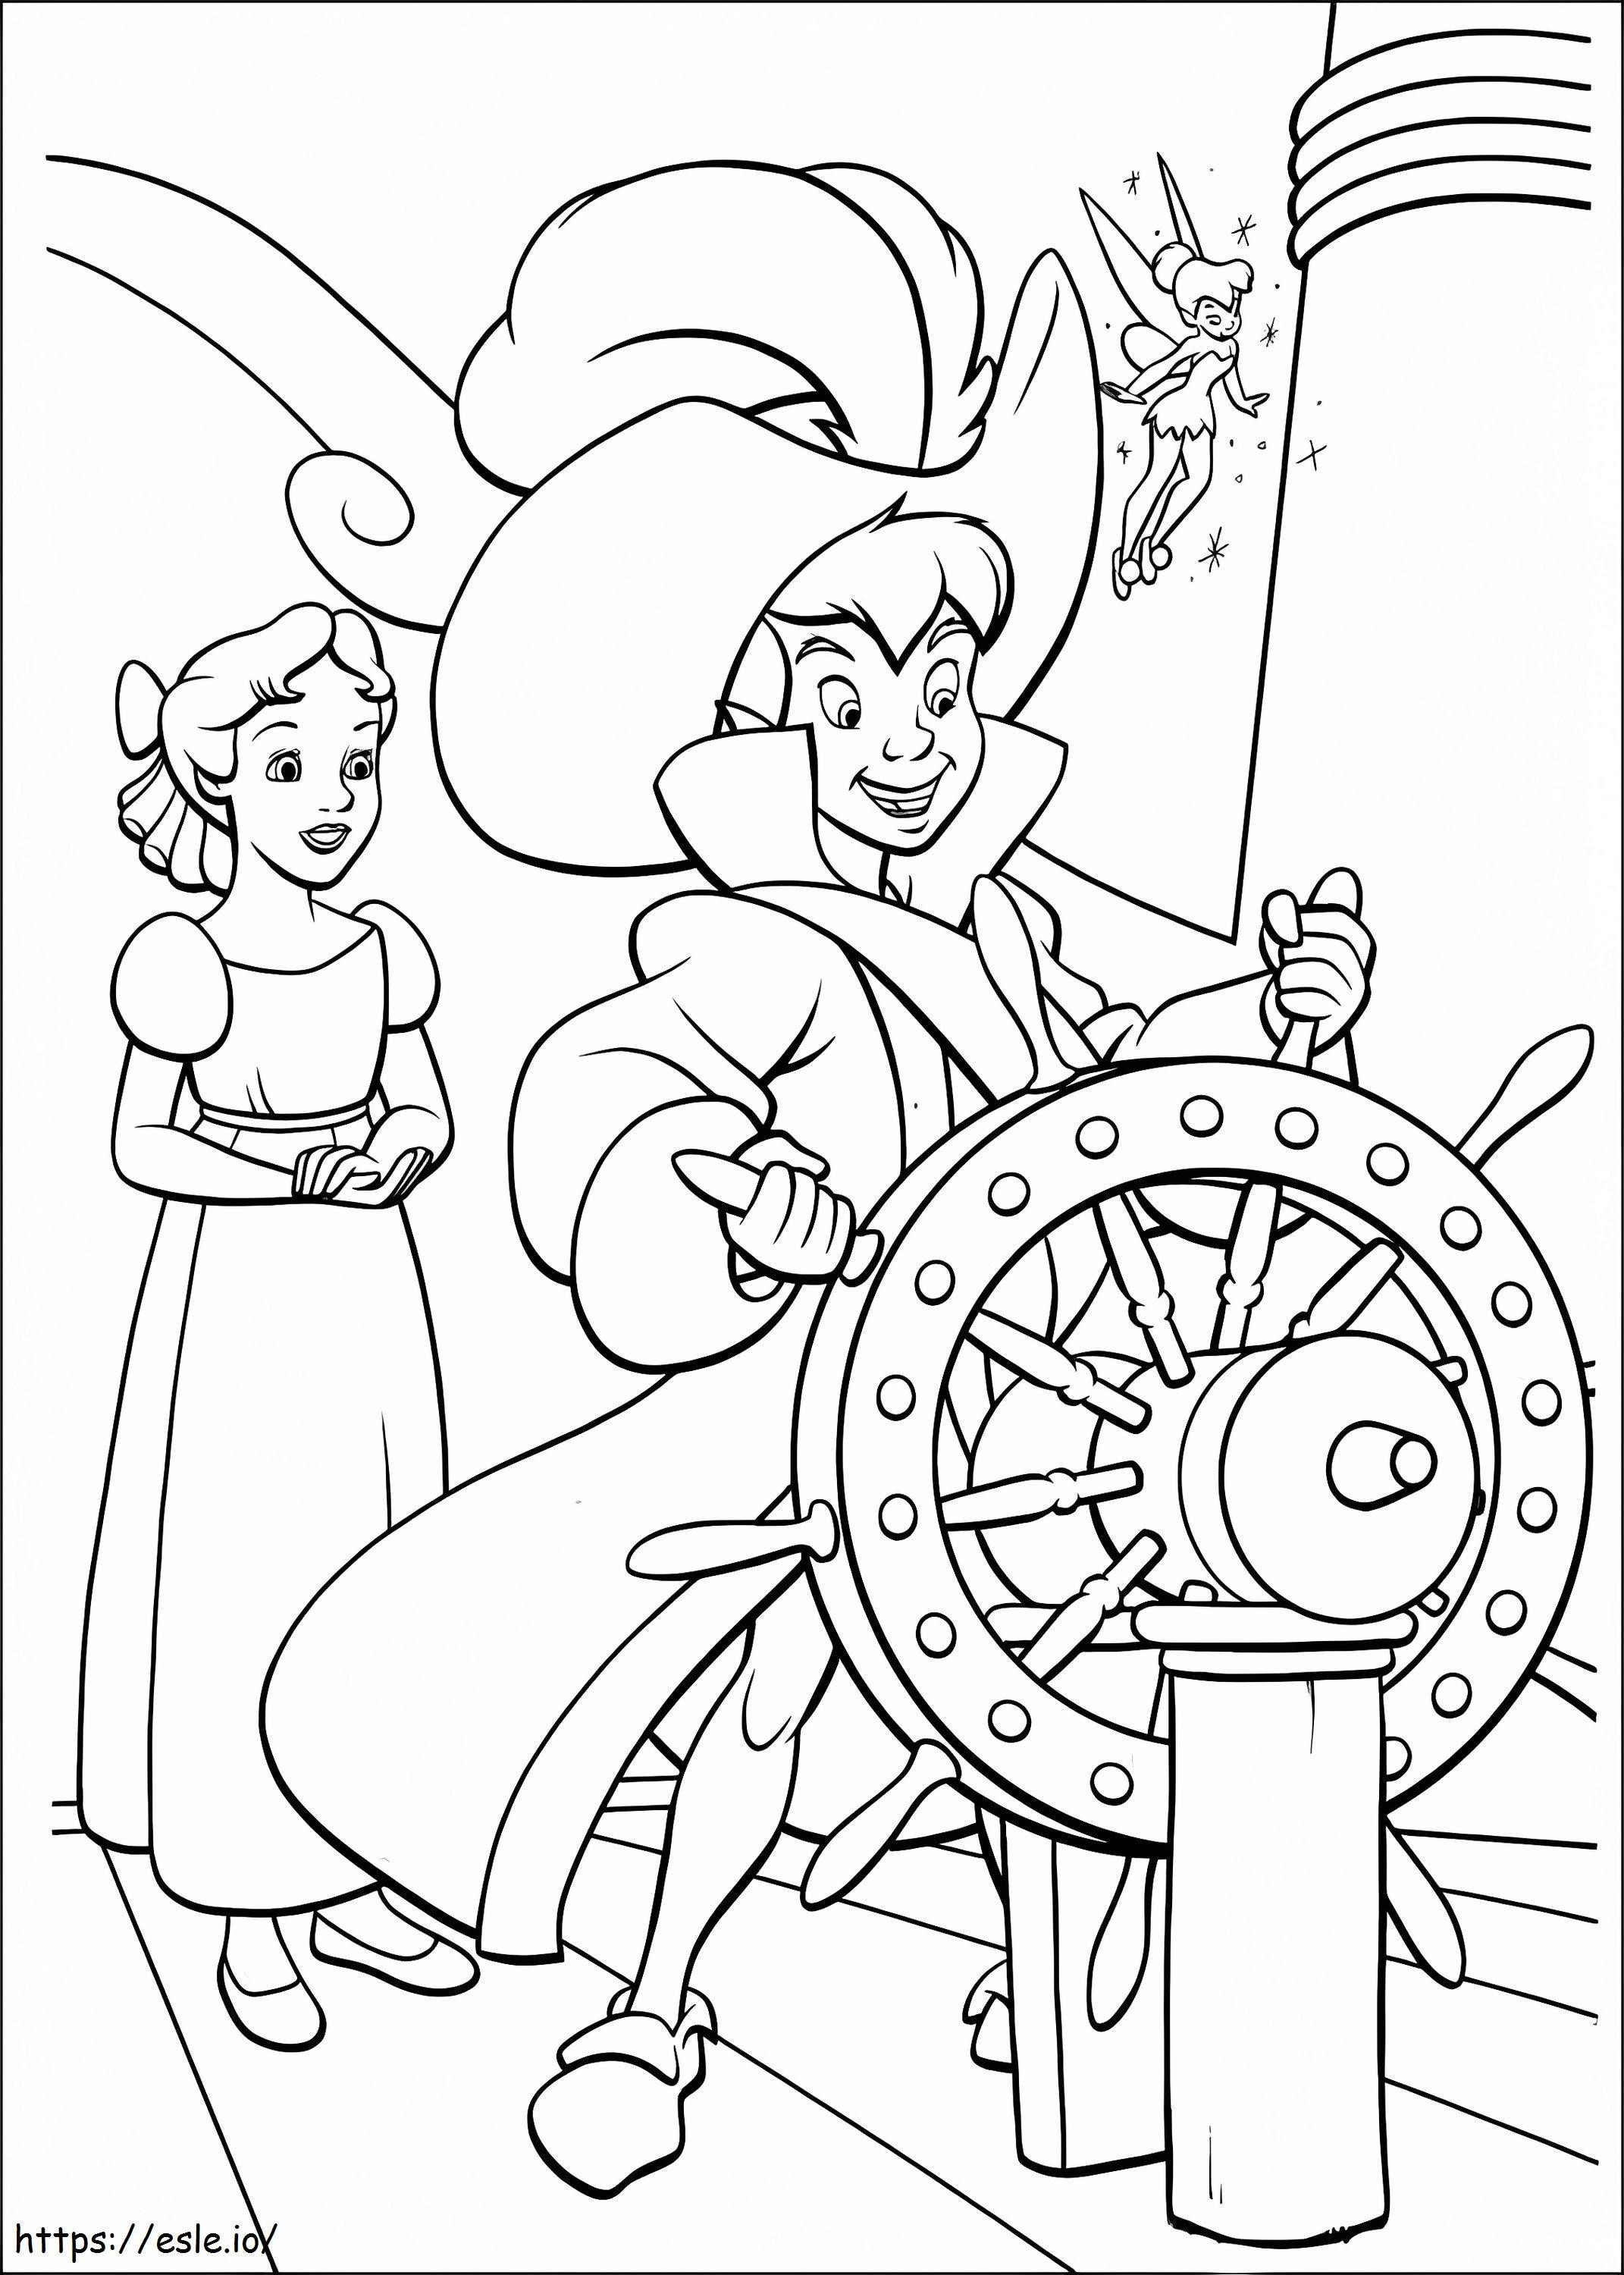 Piraten Peter Pan und Wendy ausmalbilder